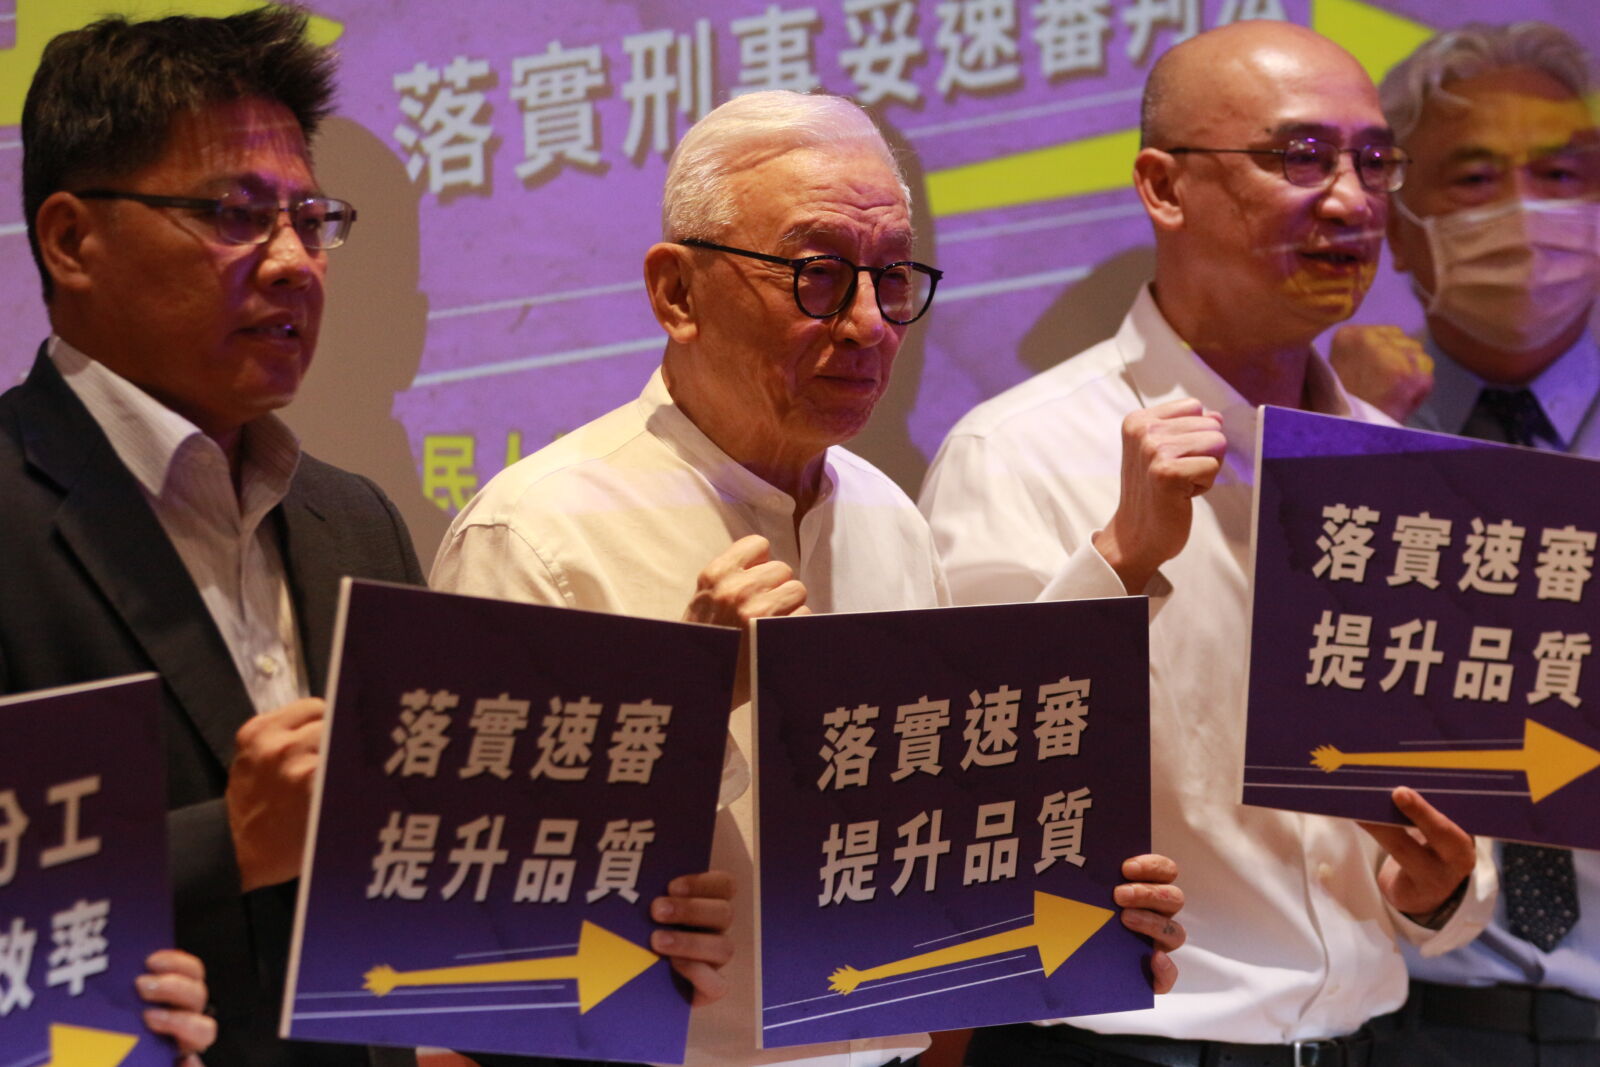 檢察官爆離職潮 台灣公民人權聯盟呼籲「檢警分工、落實刑事妥速審判法」 3